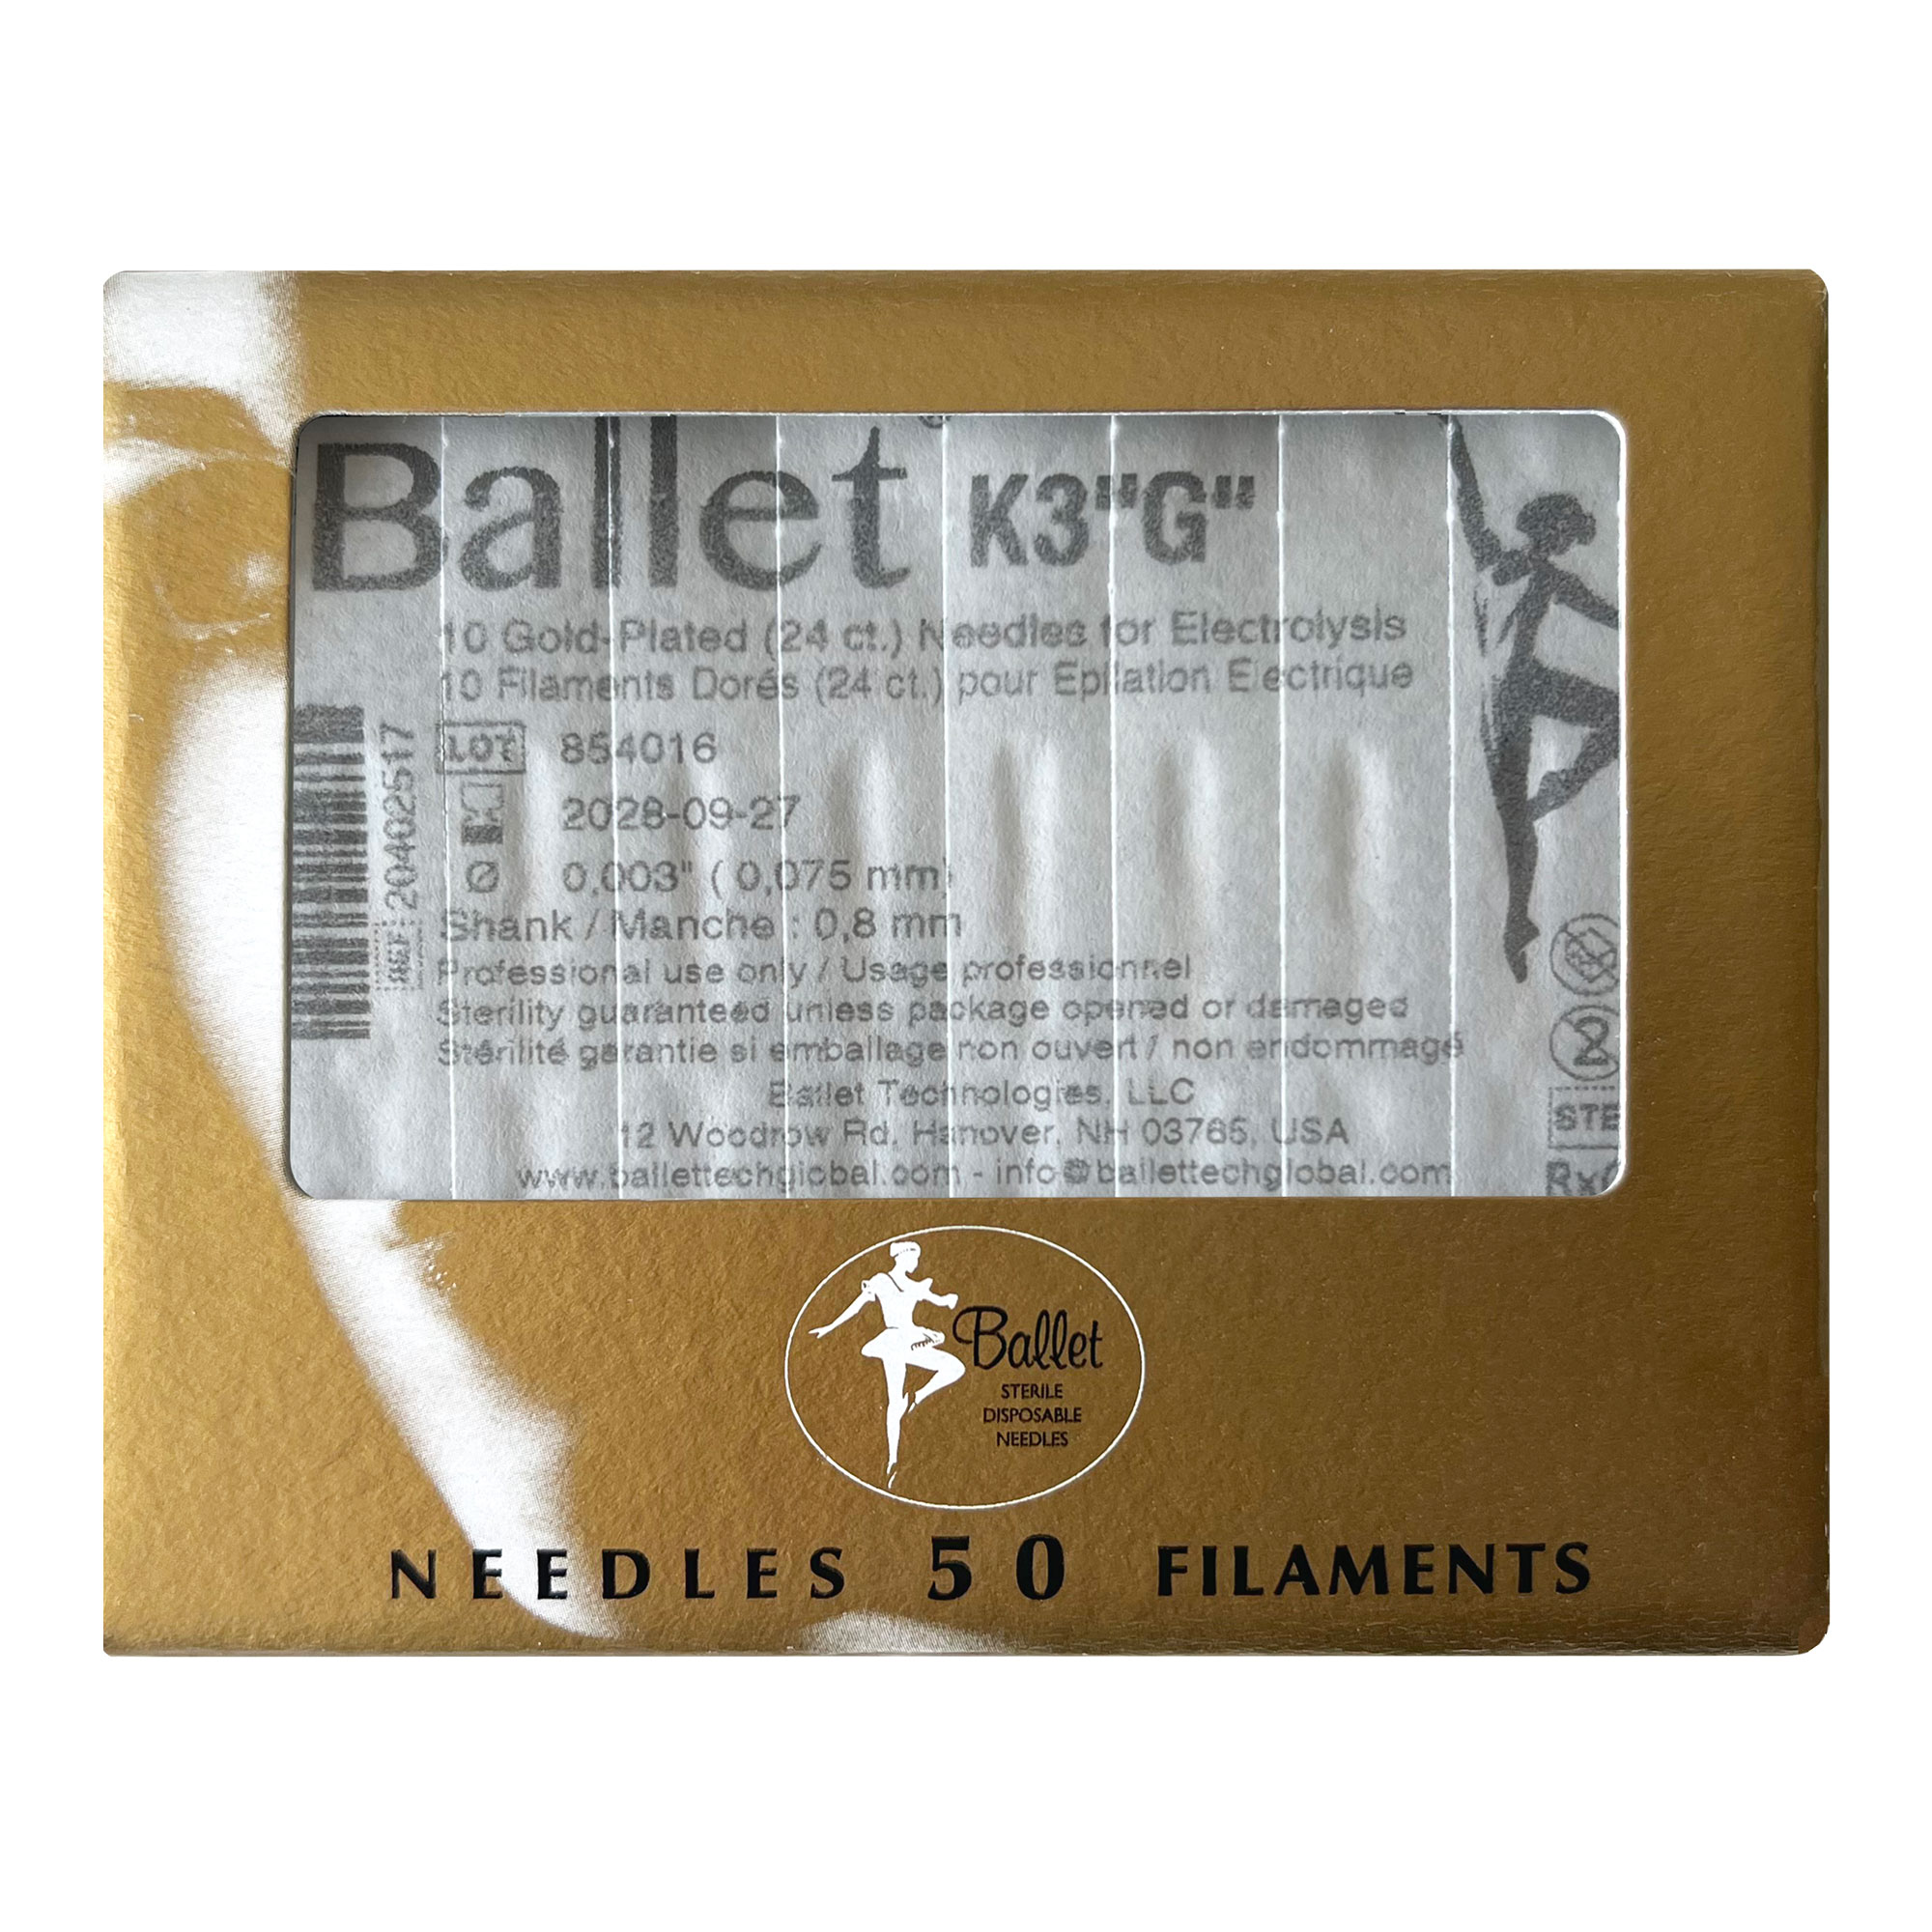 Sterile 24K gold-plated Ballet needles for epilation 0.075 mm